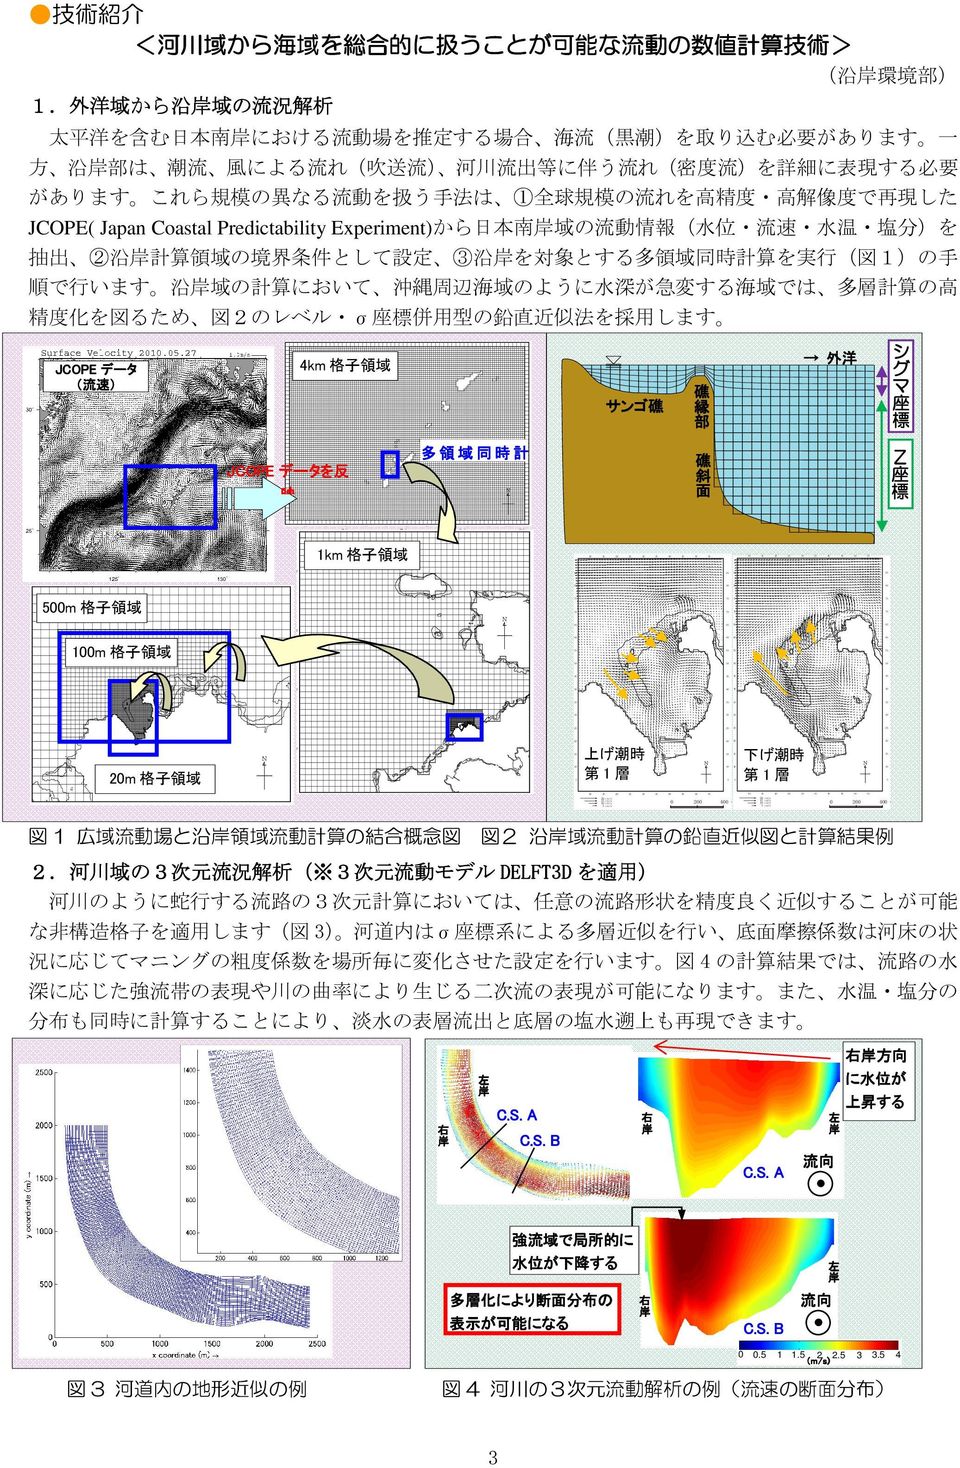 外 洋 域 から 沿 域 の 流 況 解 析 太 平 洋 を 含 む 日 本 南 における 流 動 場 を 推 定 する 場 合 海 流 ( 黒 潮 )を 取 り 込 む 必 要 があります 一 方 沿 部 は 潮 流 風 による 流 れ( 吹 送 流 ) 河 川 流 出 等 に 伴 う 流 れ( 密 度 流 )を 詳 細 に 表 現 する 必 要 があります これら 規 模 の 異 なる 流